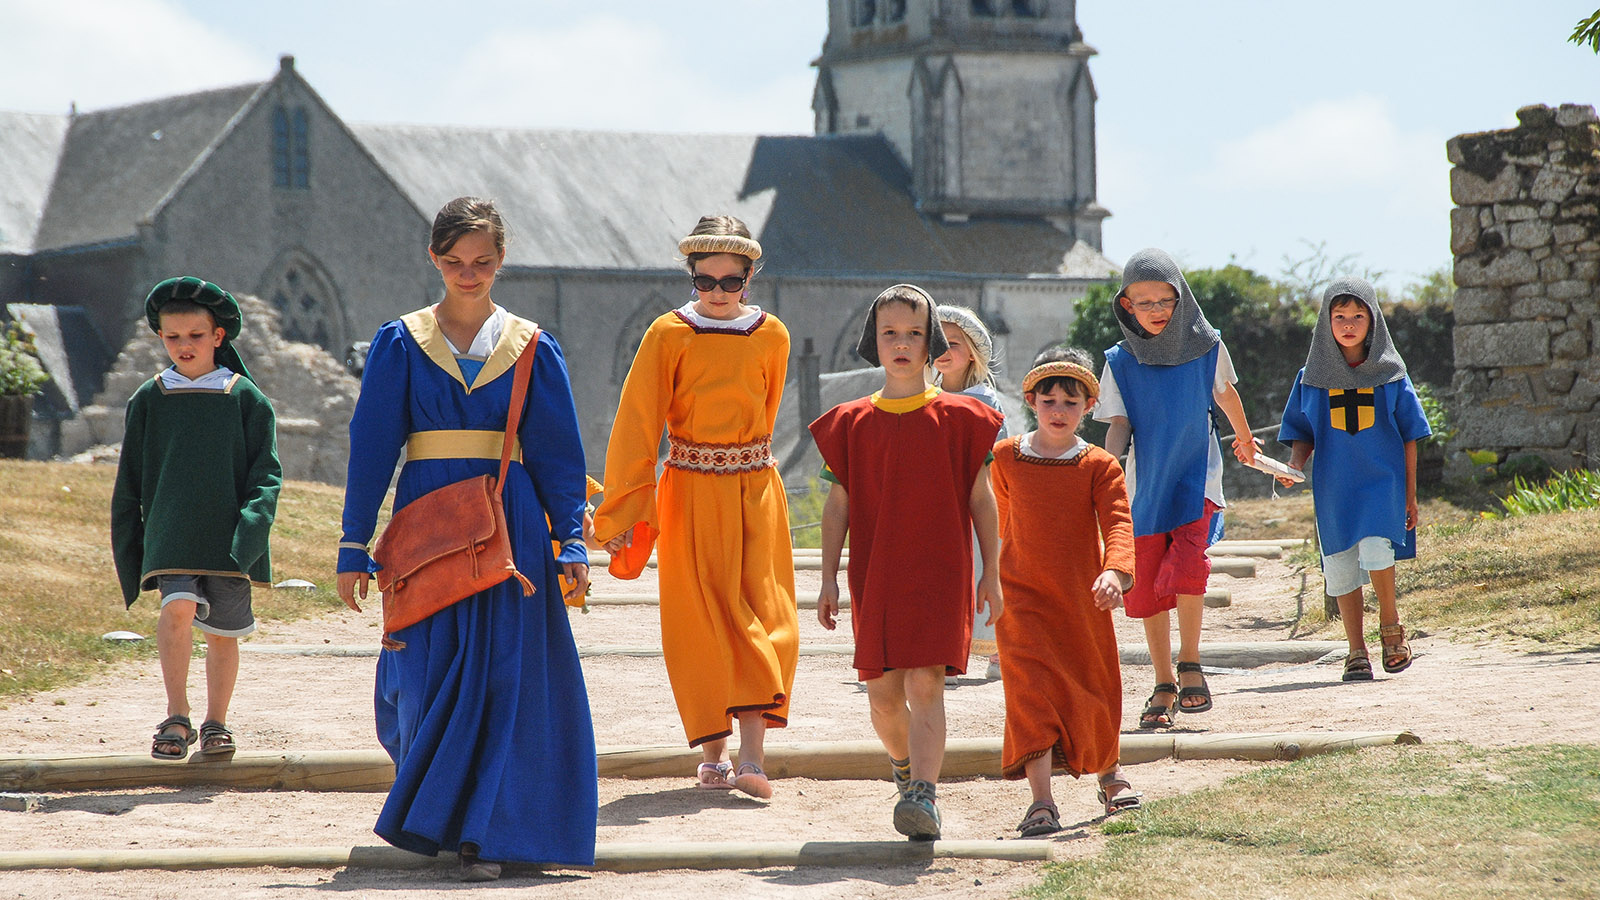 Kinder können im Sommer auf dem Château de Tiffauges hautnah eine Zeitreise ins Mittelalter erleben. Foto: Hilke Maunder